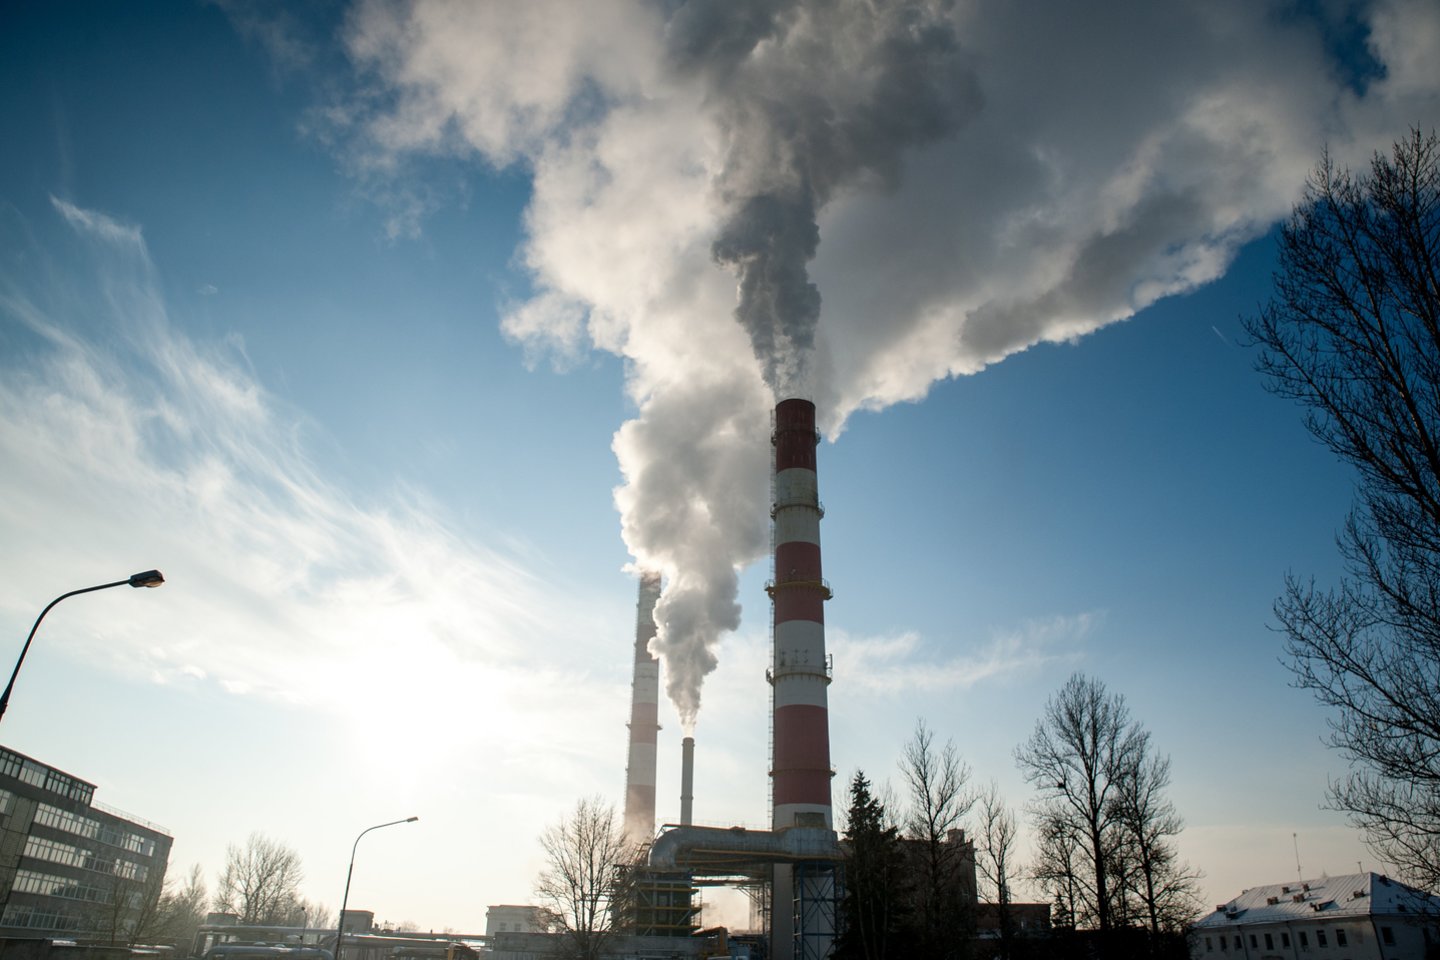 Būsimoji Vyriausybė ketina iki 2024 metų panaikinti visas mokesčių lengvatas naudojamam iškastiniam kurui, visiškai atsisakyti anglies bei naftos produktų vartojimo šilumos sektoriuje.<br>V.Ščiavinsko nuotr.